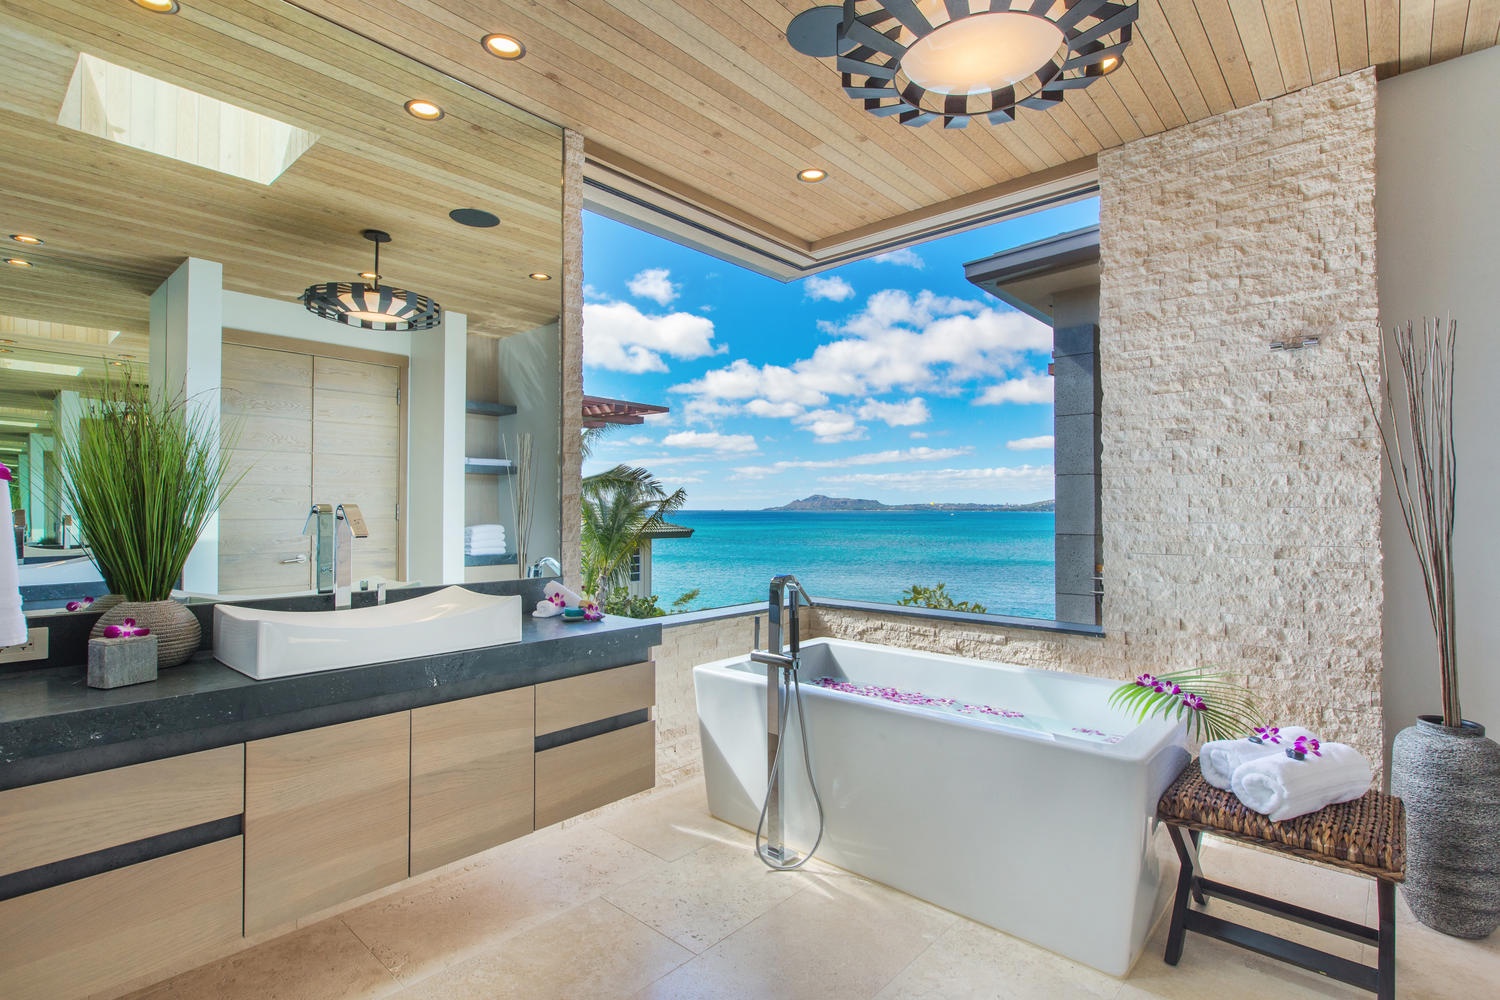 Honolulu Vacation Rentals, Ocean House - Primary bathroom views.